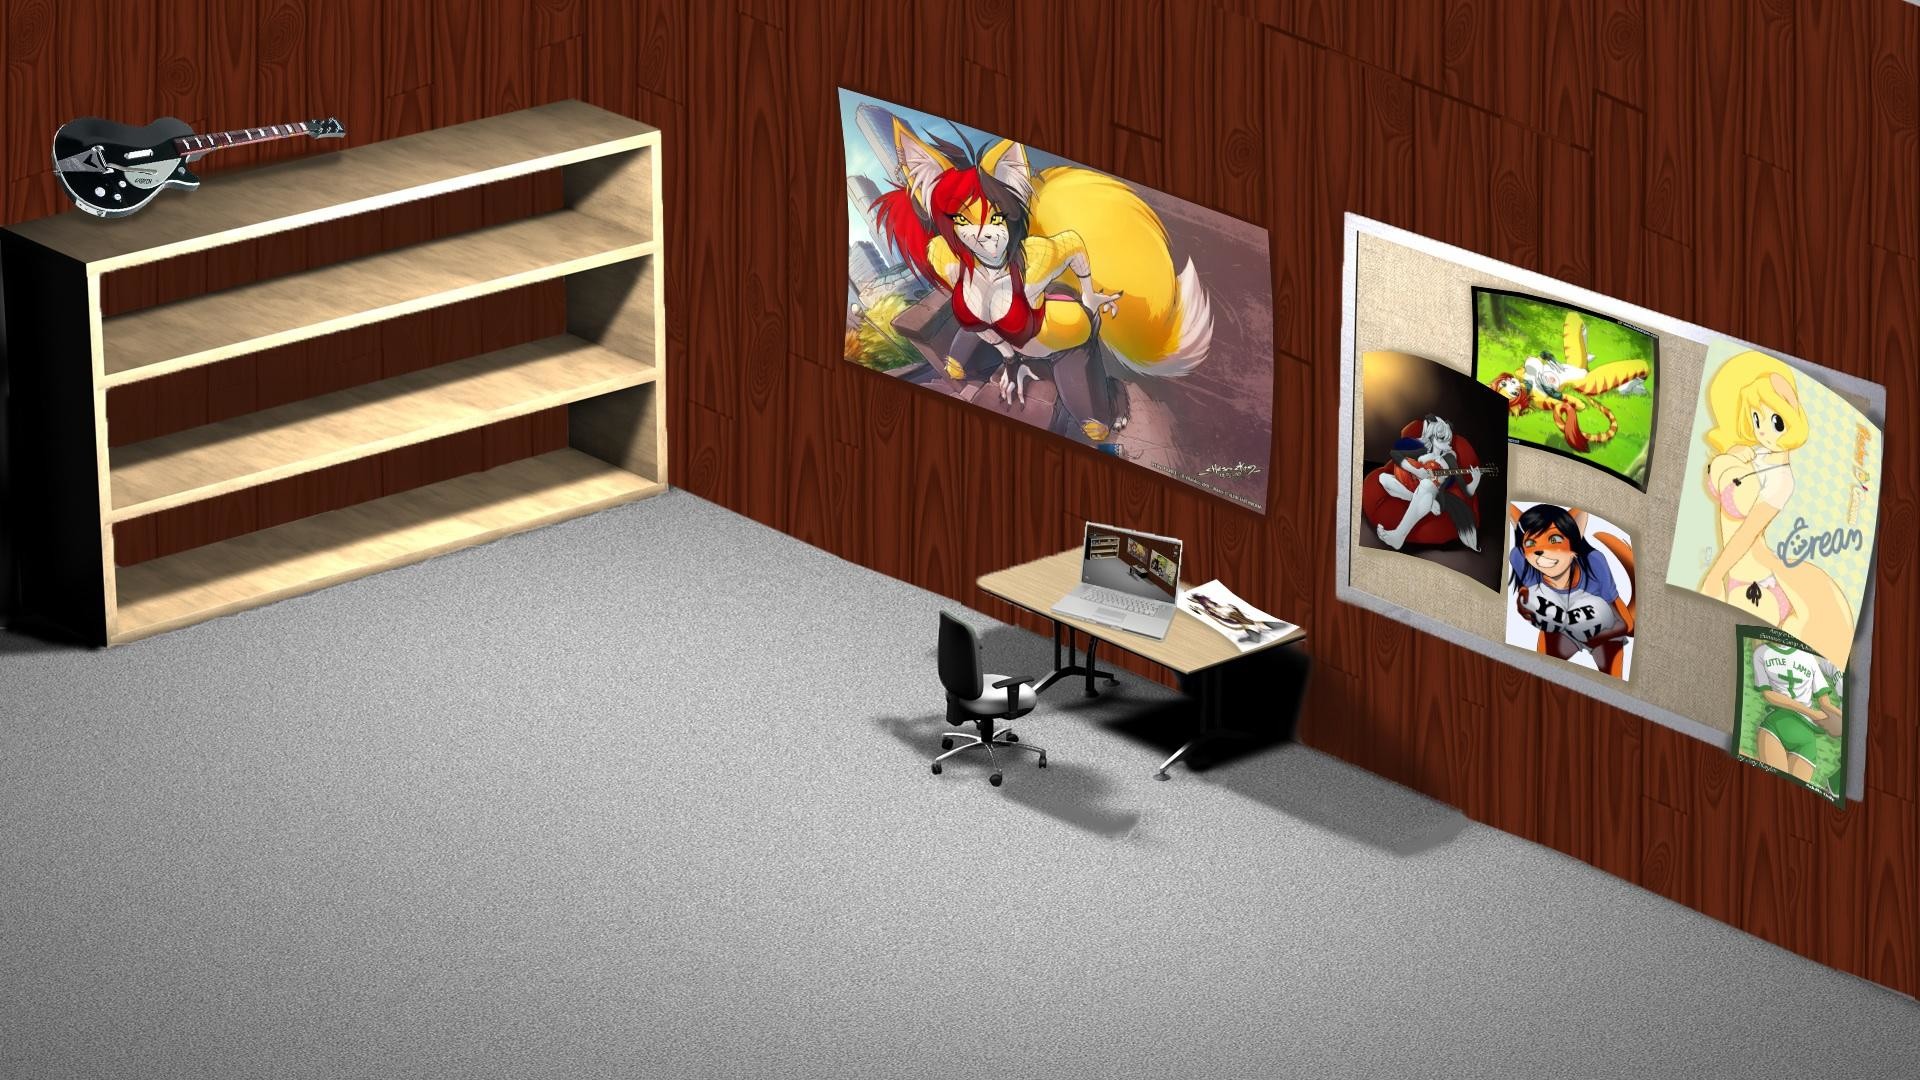 Một không gian làm việc thoải mái và trang trọng không thể thiếu một bộ sưu tập hình nền bàn làm việc văn phòng đẹp. Liệu bạn đã tìm được bức ảnh hoàn hảo cho không gian làm việc của mình chưa? Hãy truy cập để tìm hiểu cách lựa chọn những hình nền độc đáo nhất.